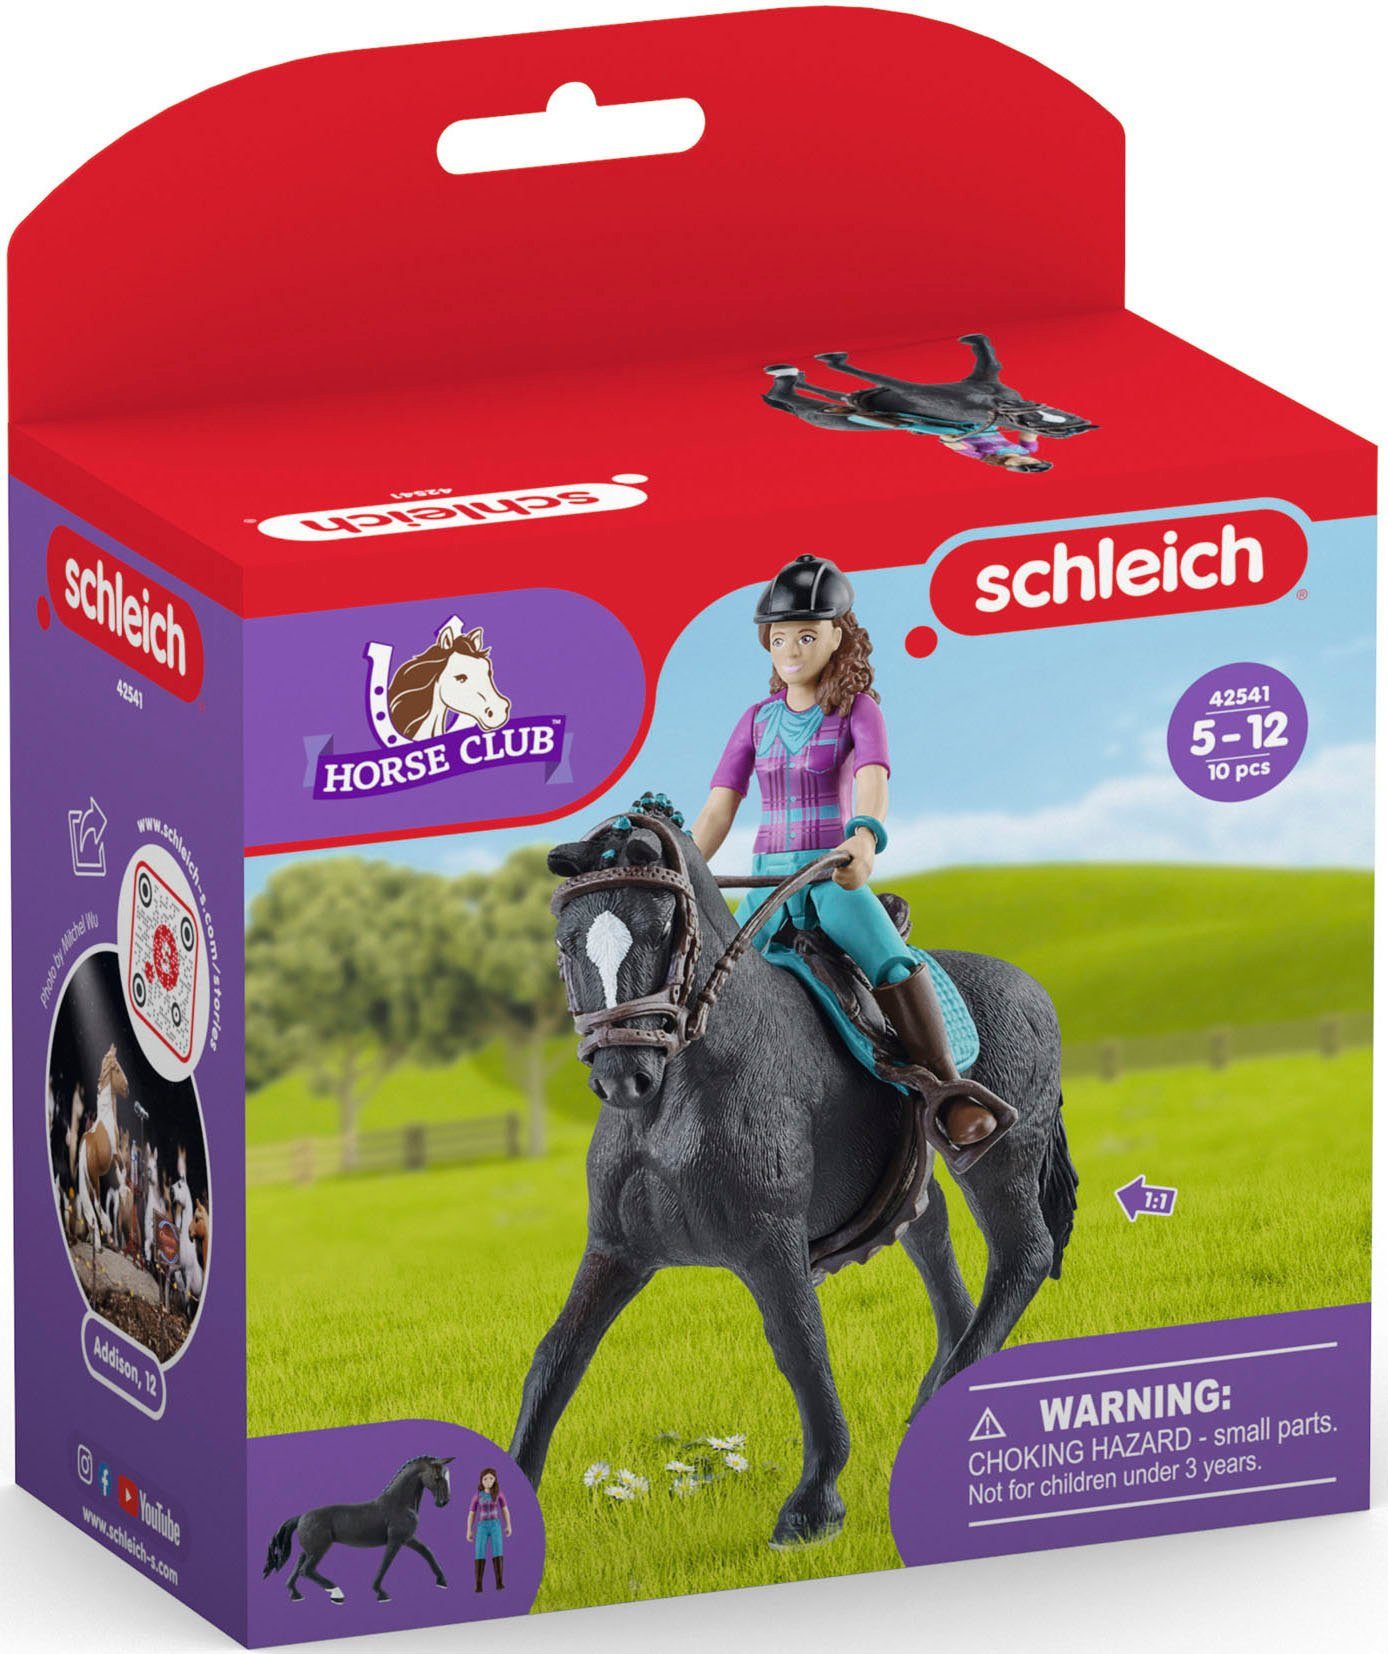 Schleich® Lisa Spielfigur und HORSE CLUB, (42541) Storm